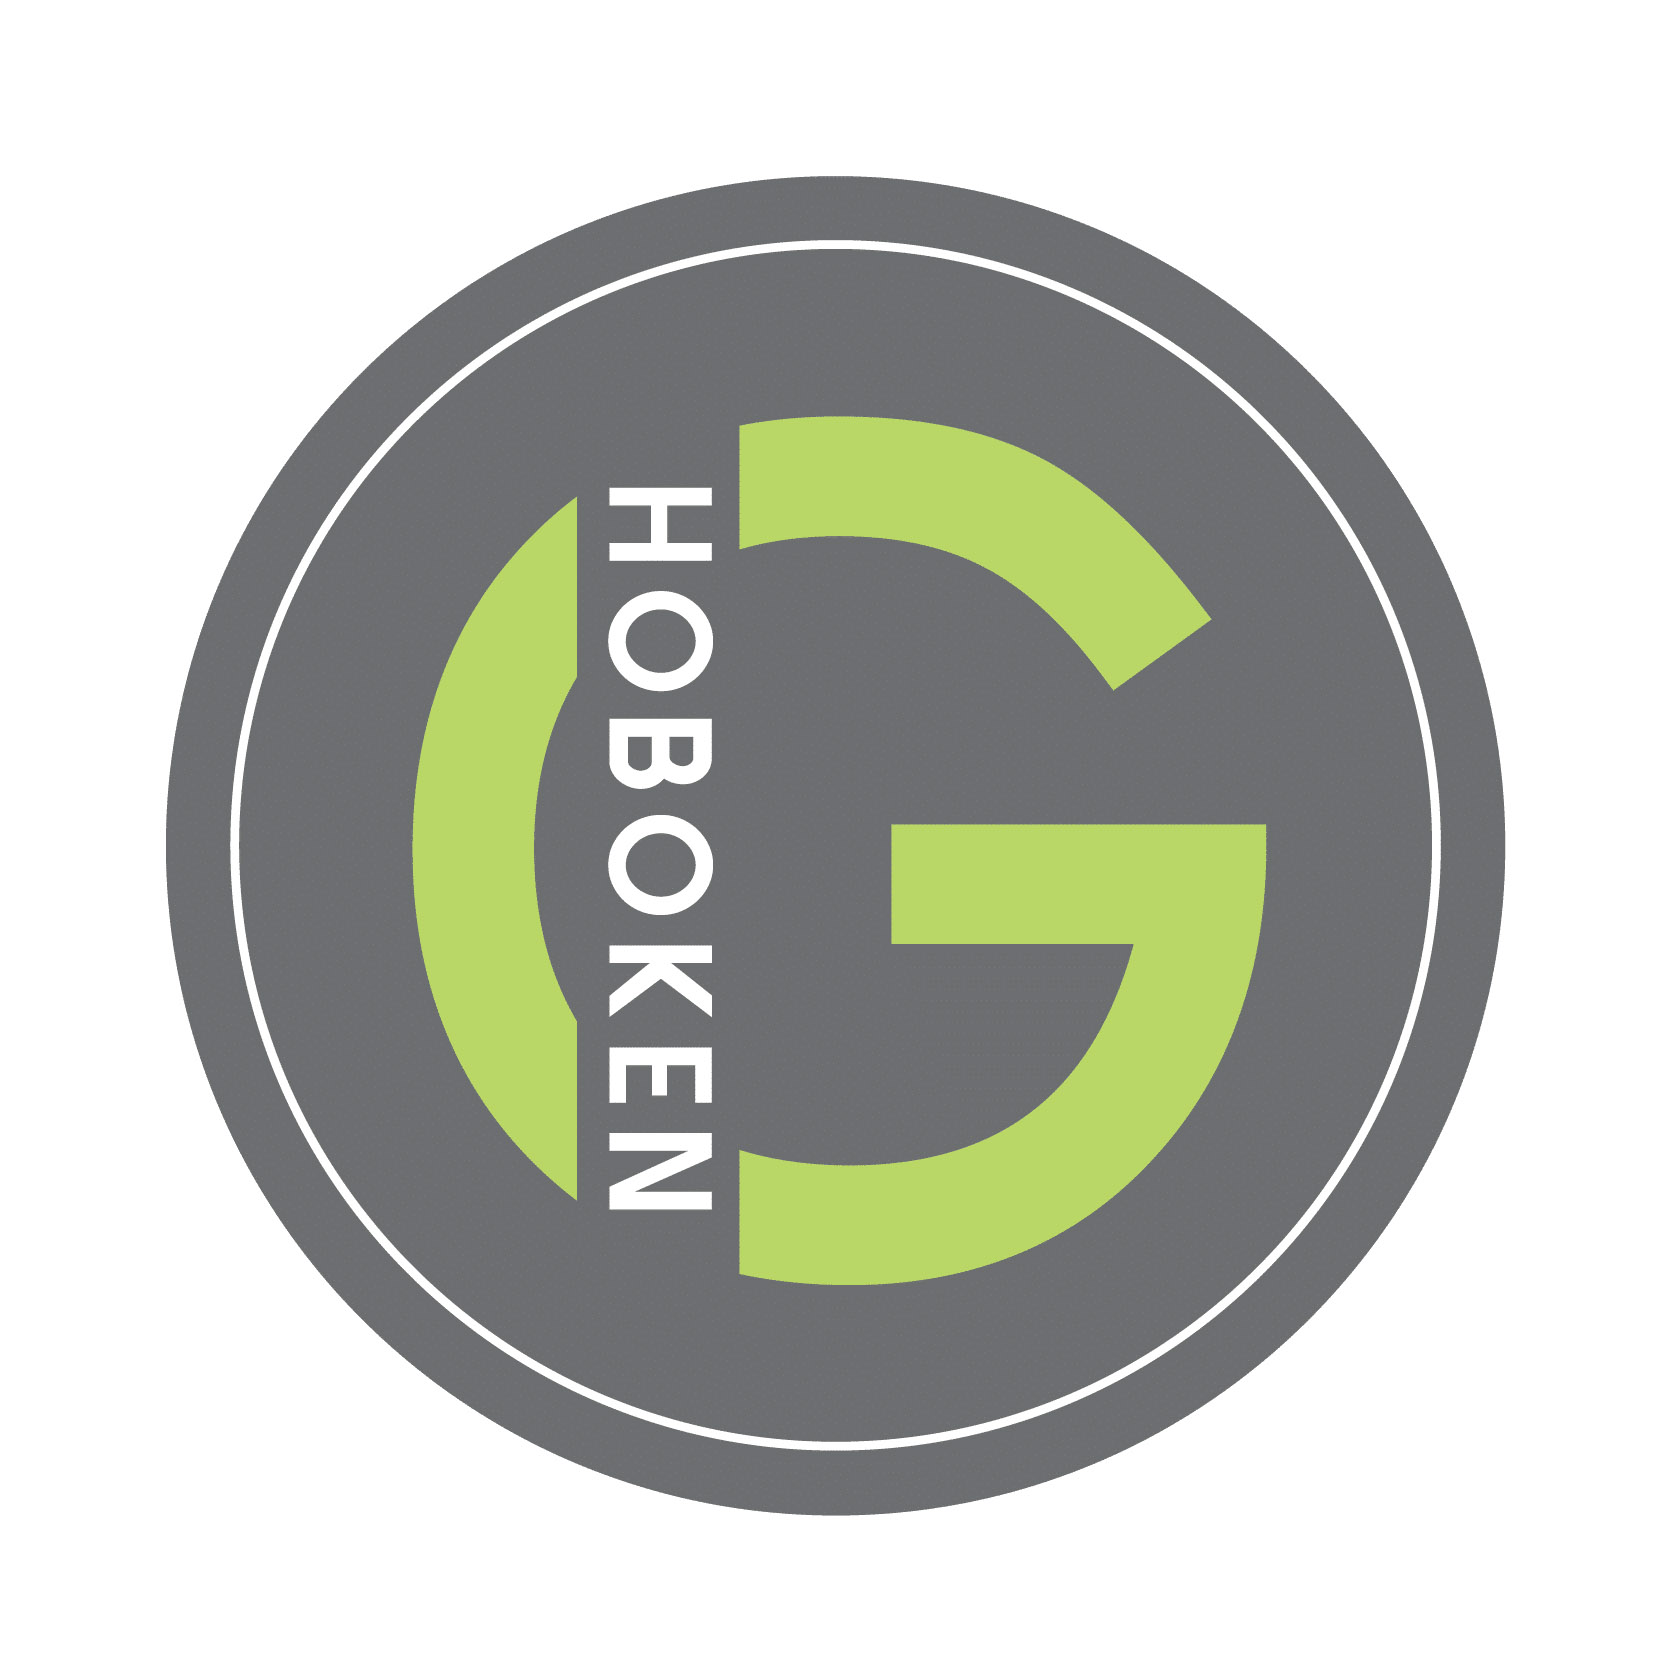 hoboken girl logo 1.